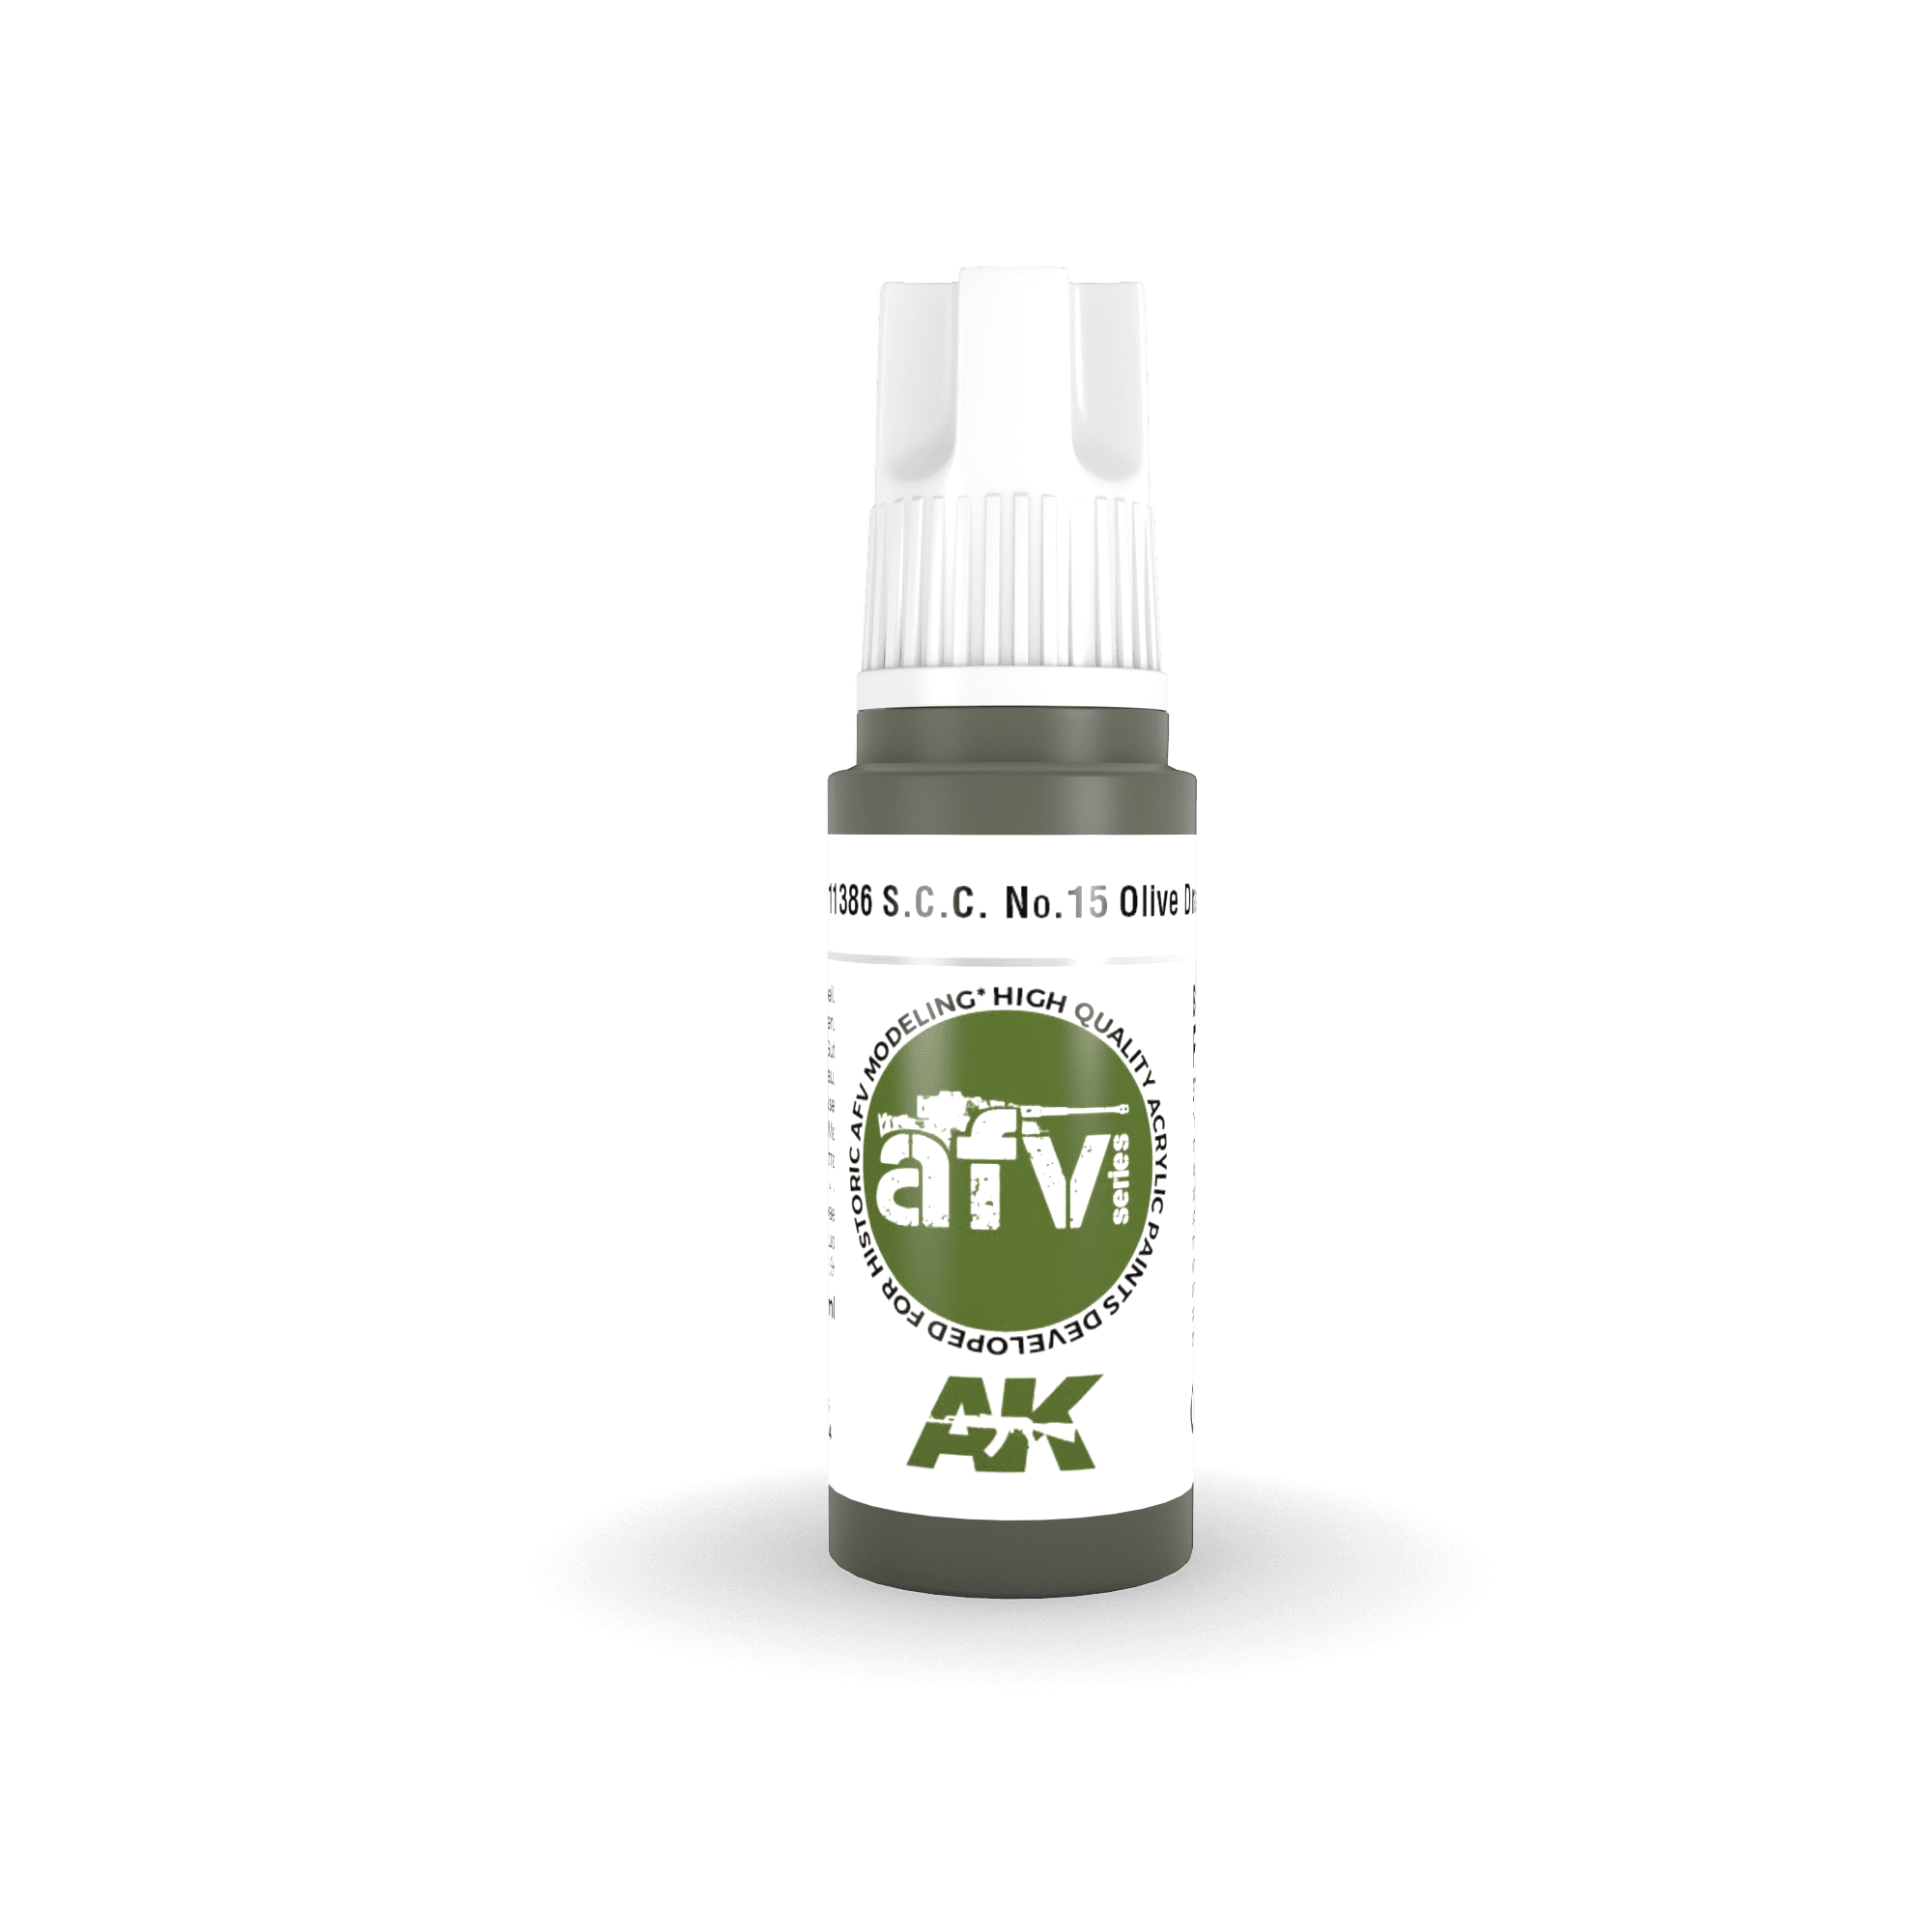 S.C.C. No.15 Olive Drab – AFV